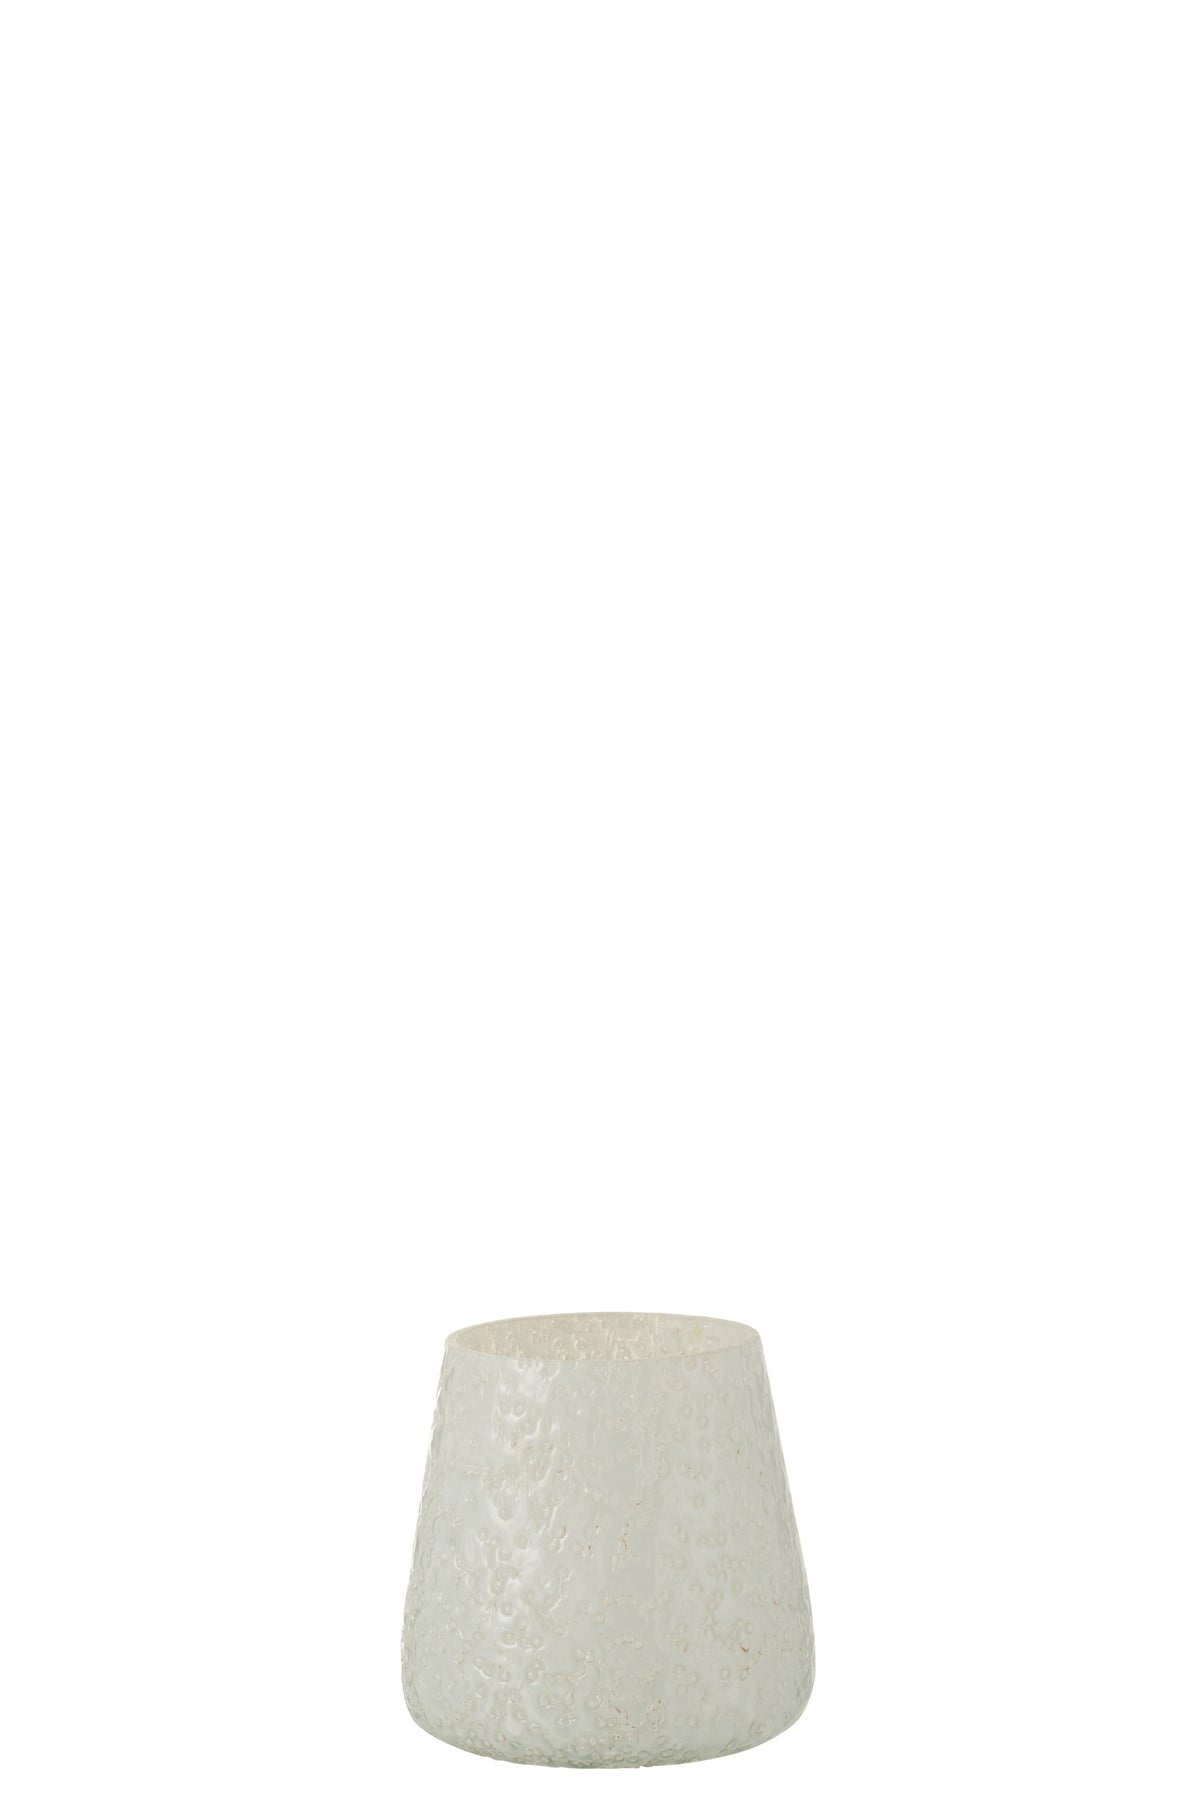 Windlicht Reliefglas Weiß Klein - (2466)